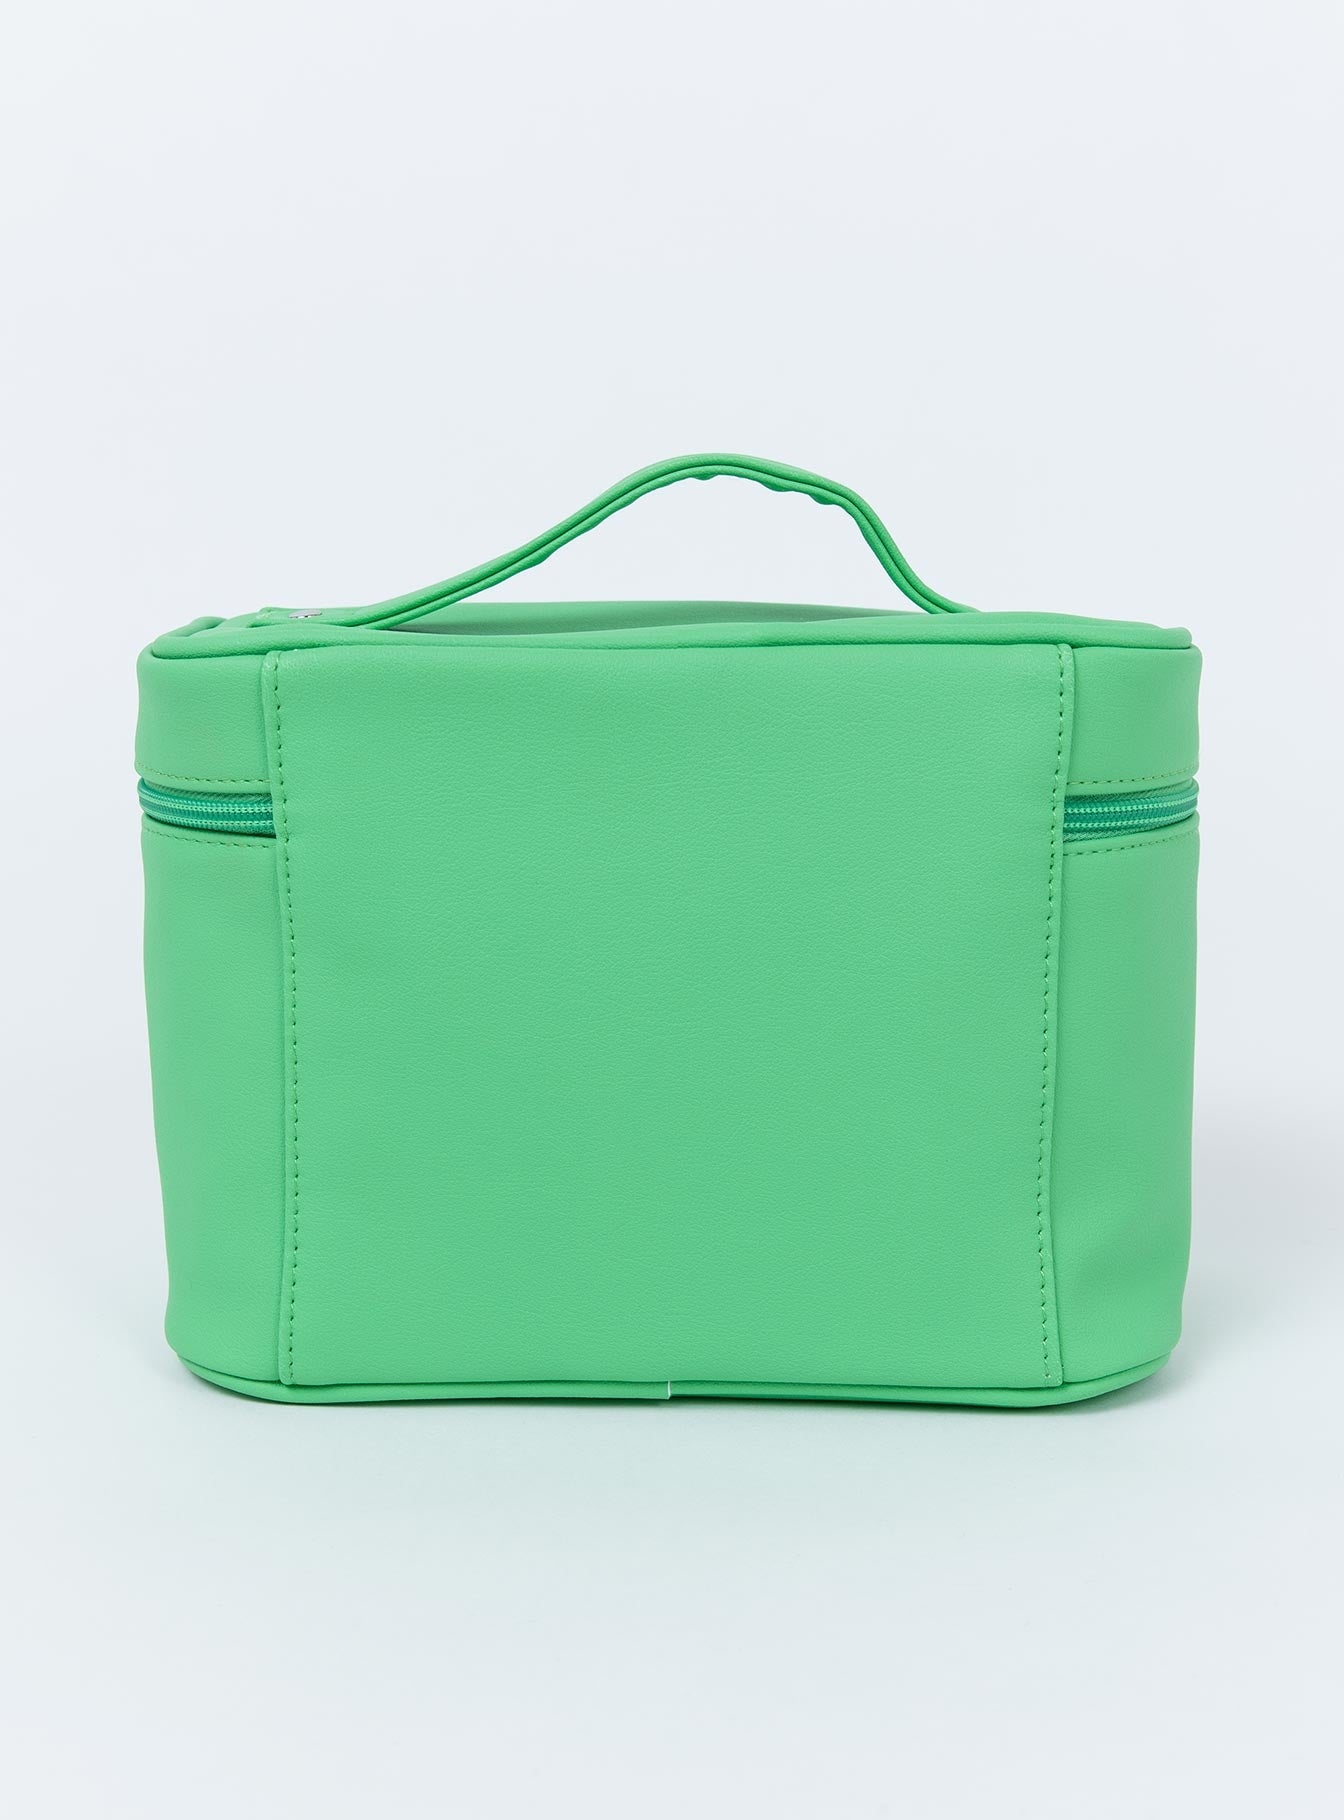 Jeffree Star Cosmetics Green Travel Makeup Bag – Princess Polly AUS